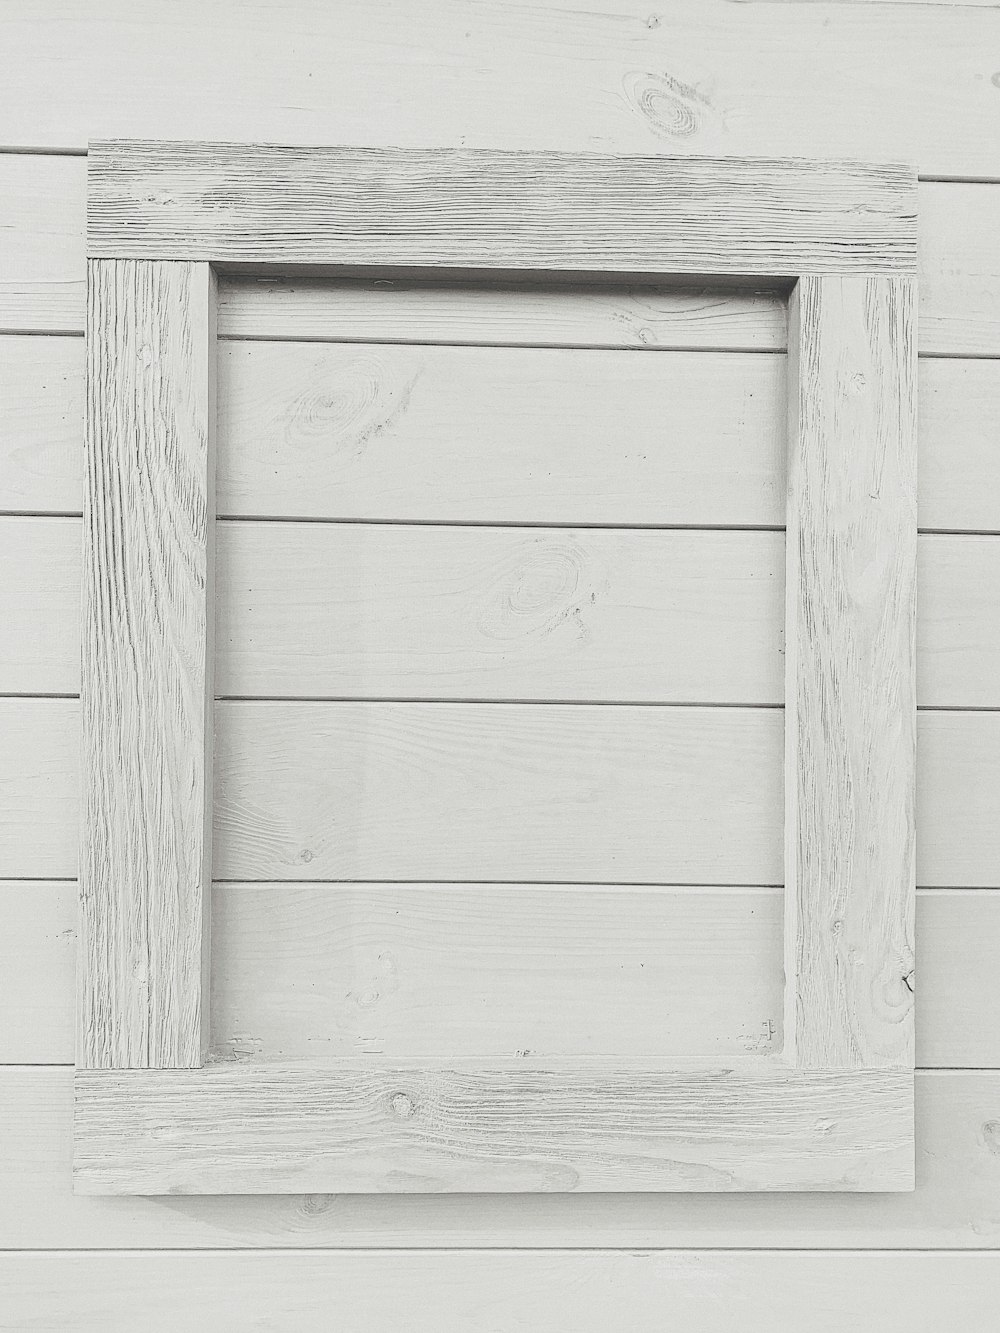 rectangular white frame on white surface